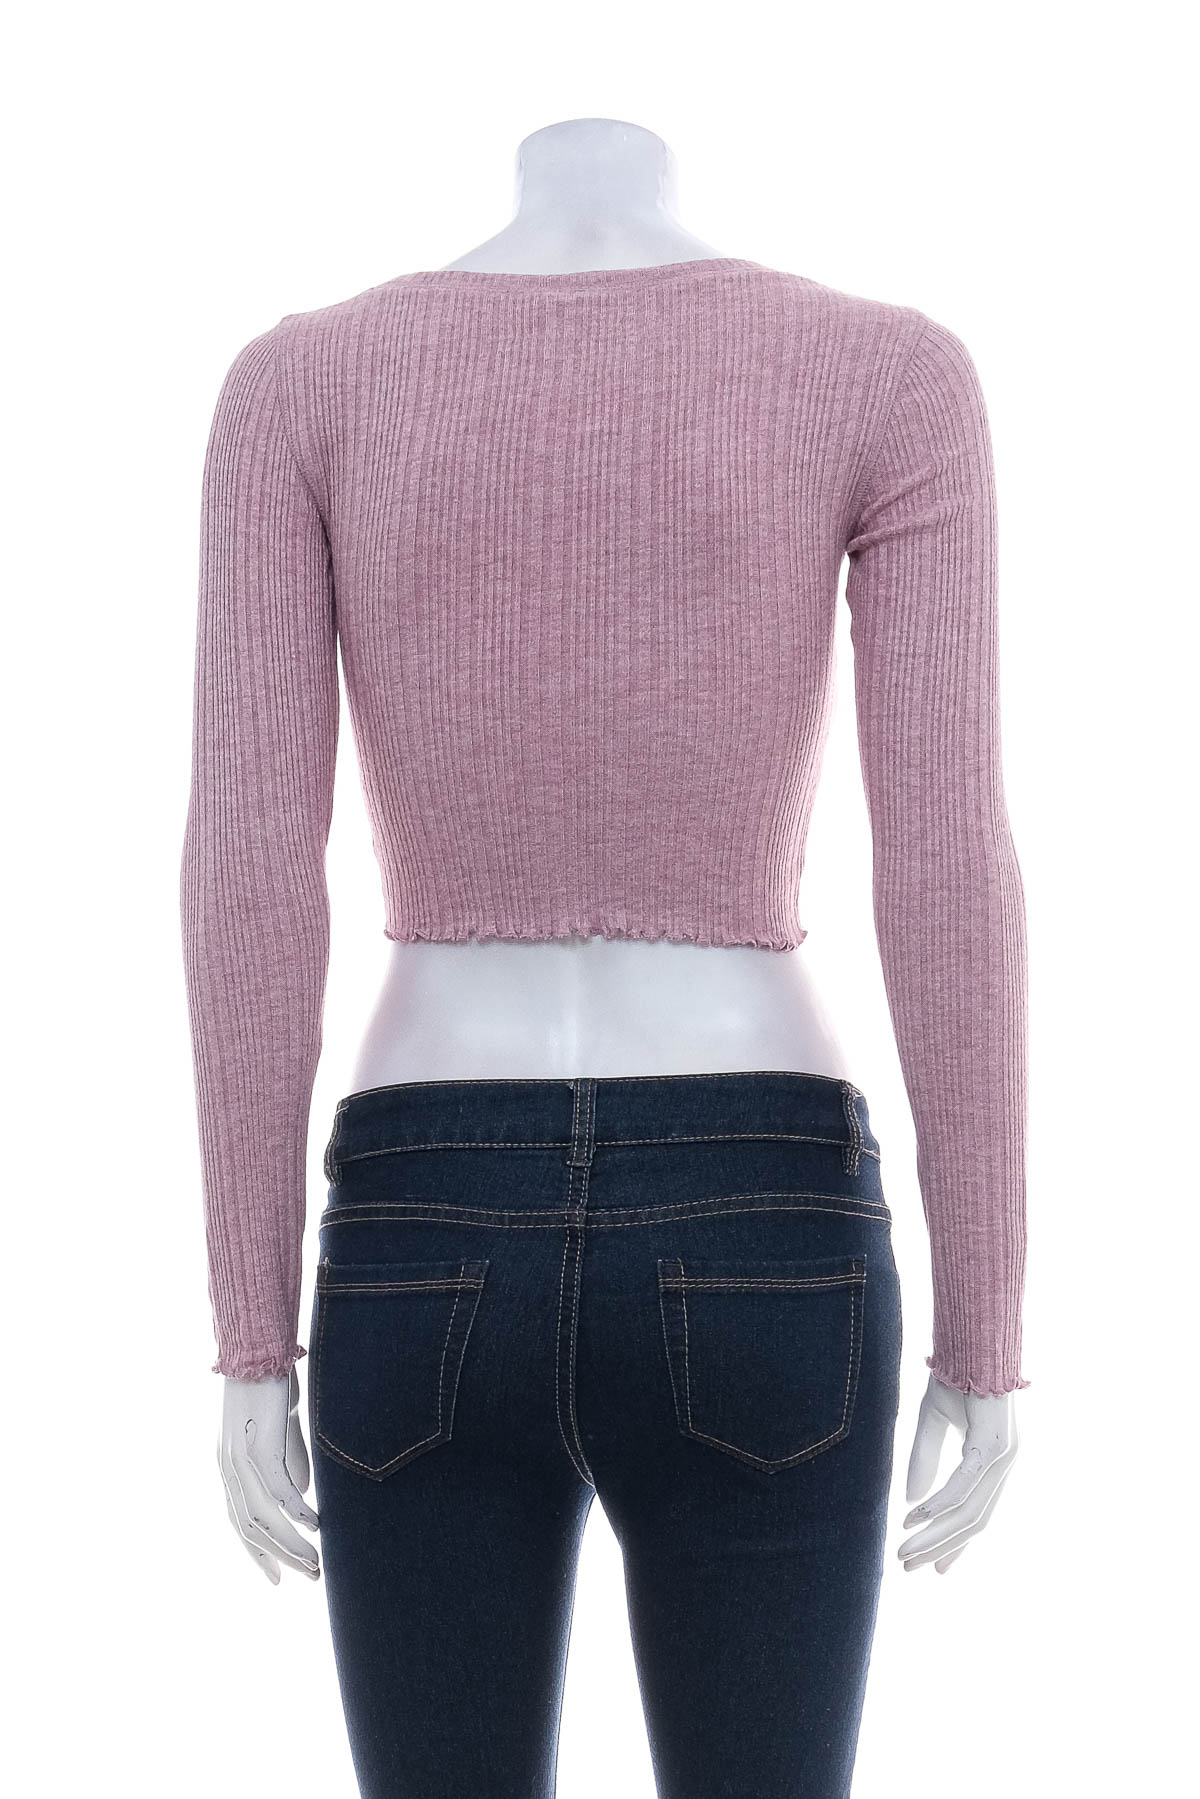 Women's sweater - AERO - 1